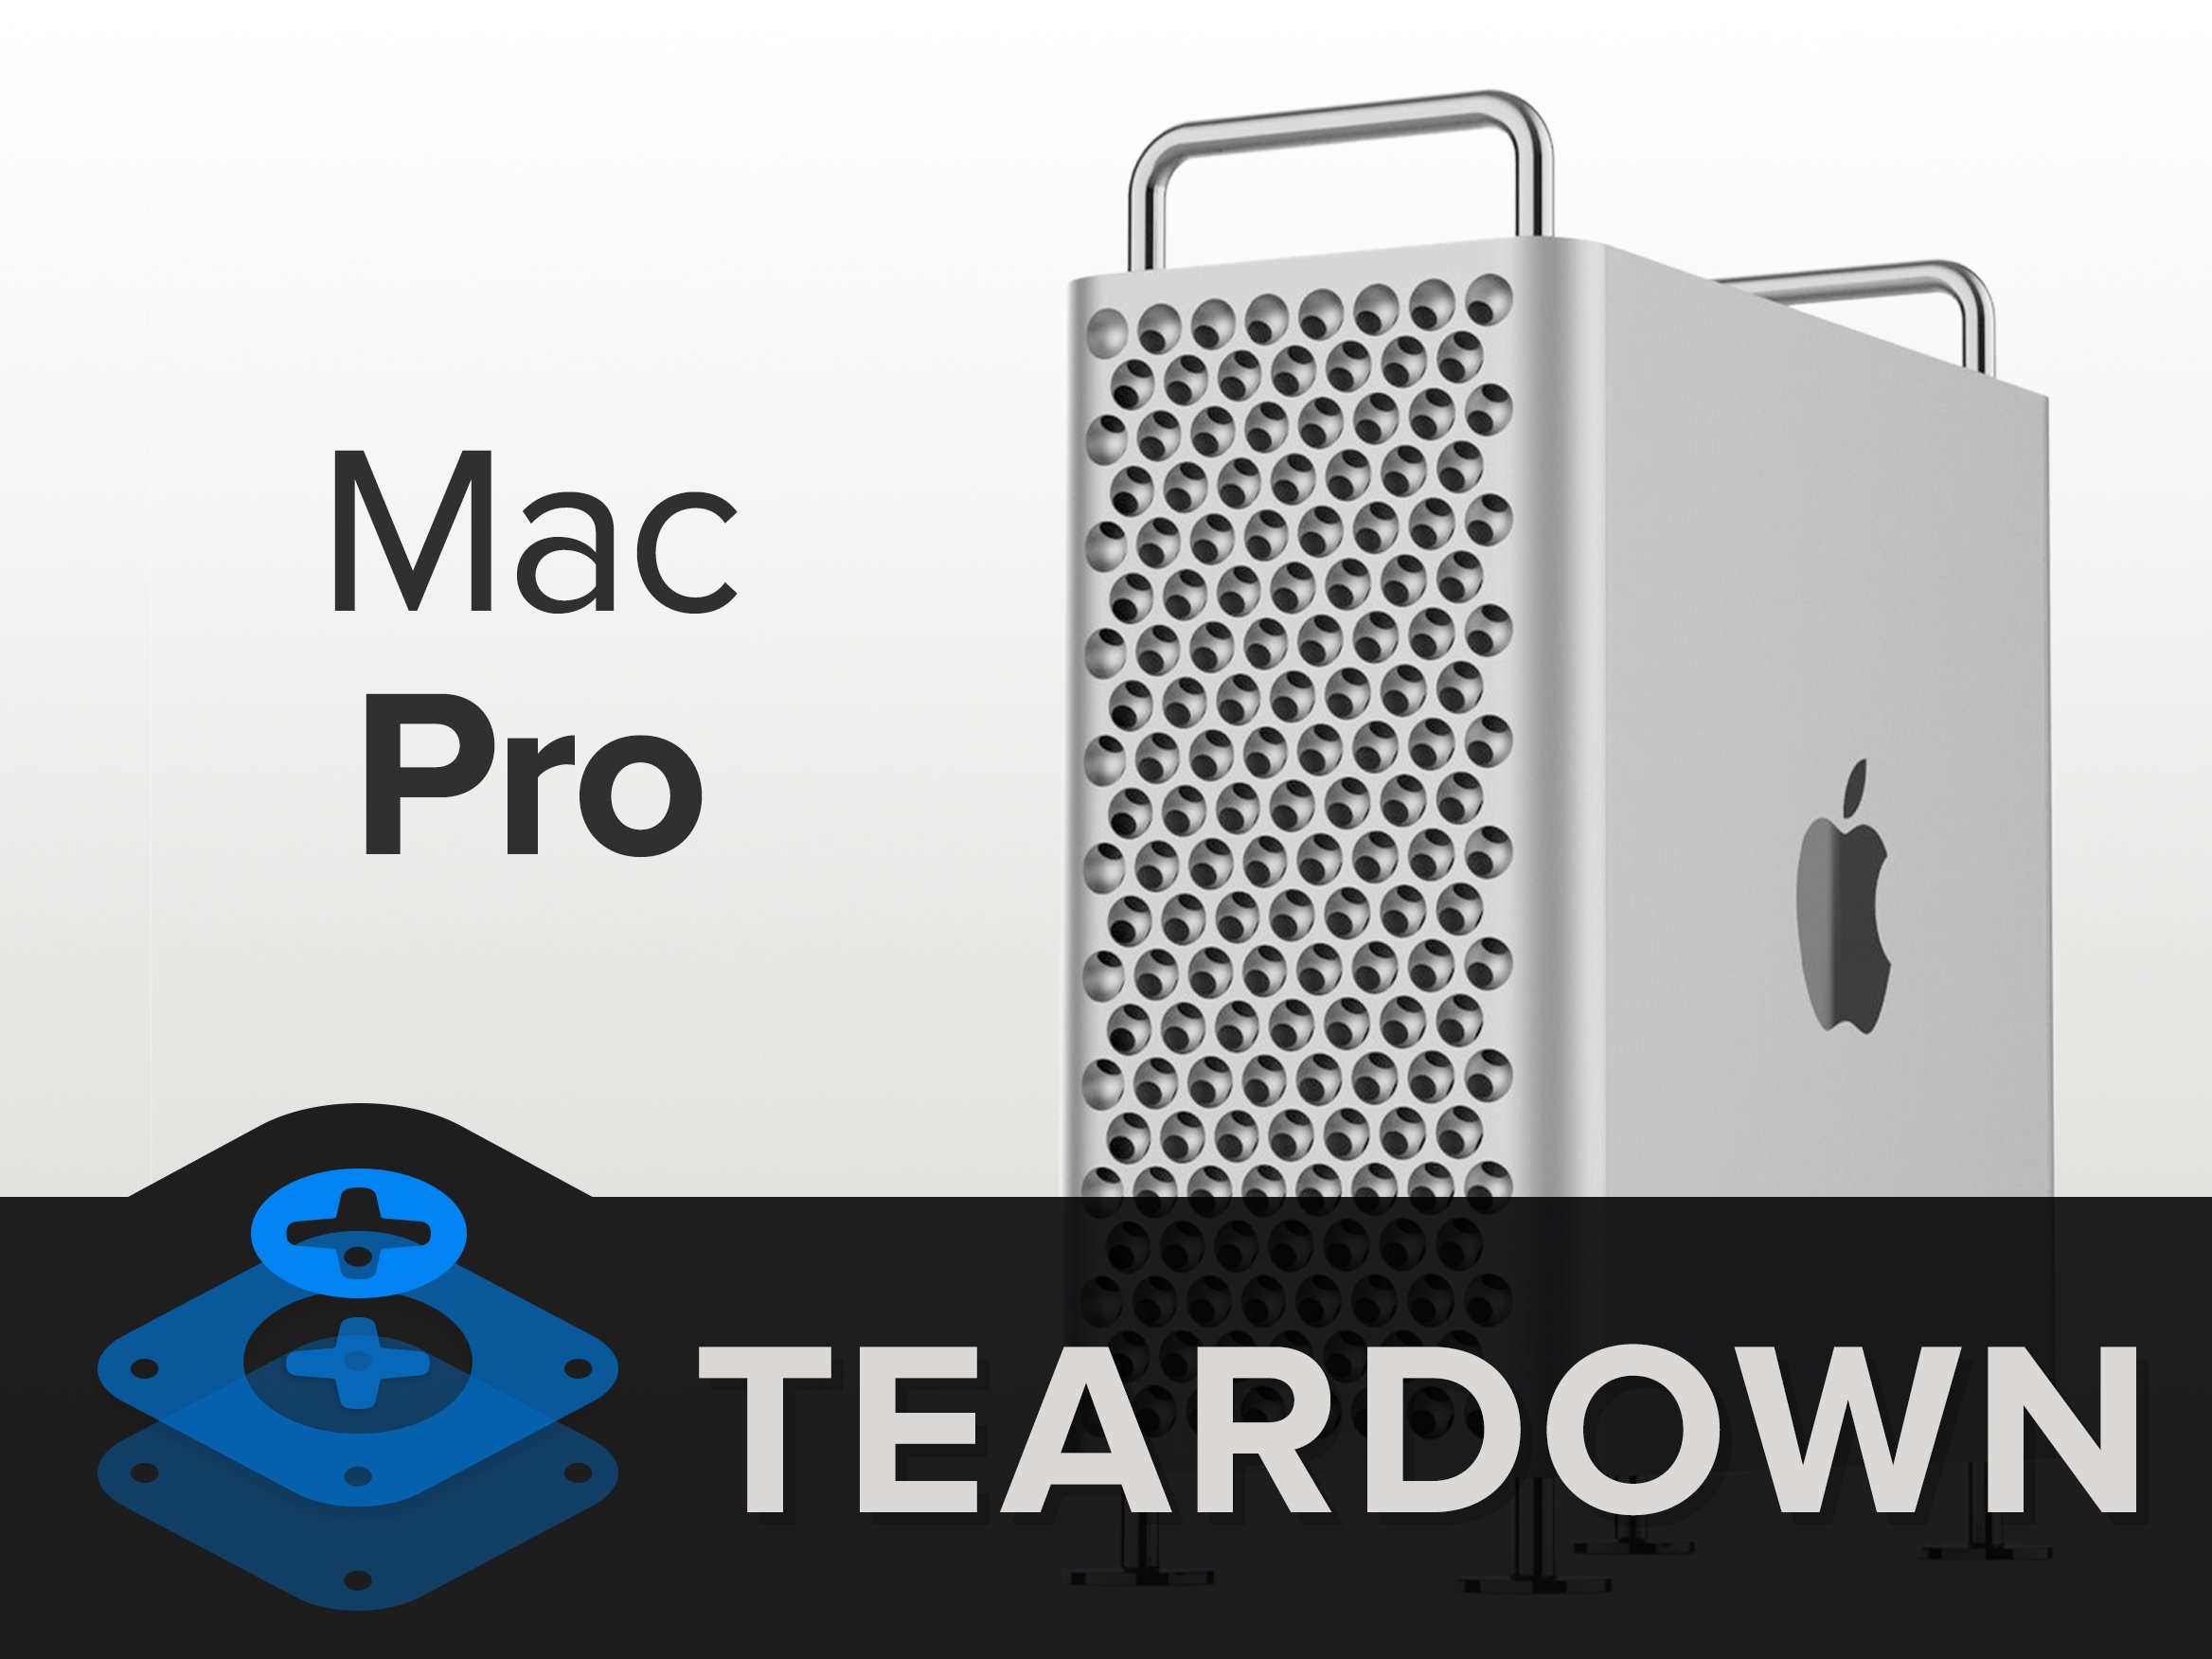 W iFixit nazwali najbardziej konserwowalne urządzenie Apple - to nowy komputer Mac Pro